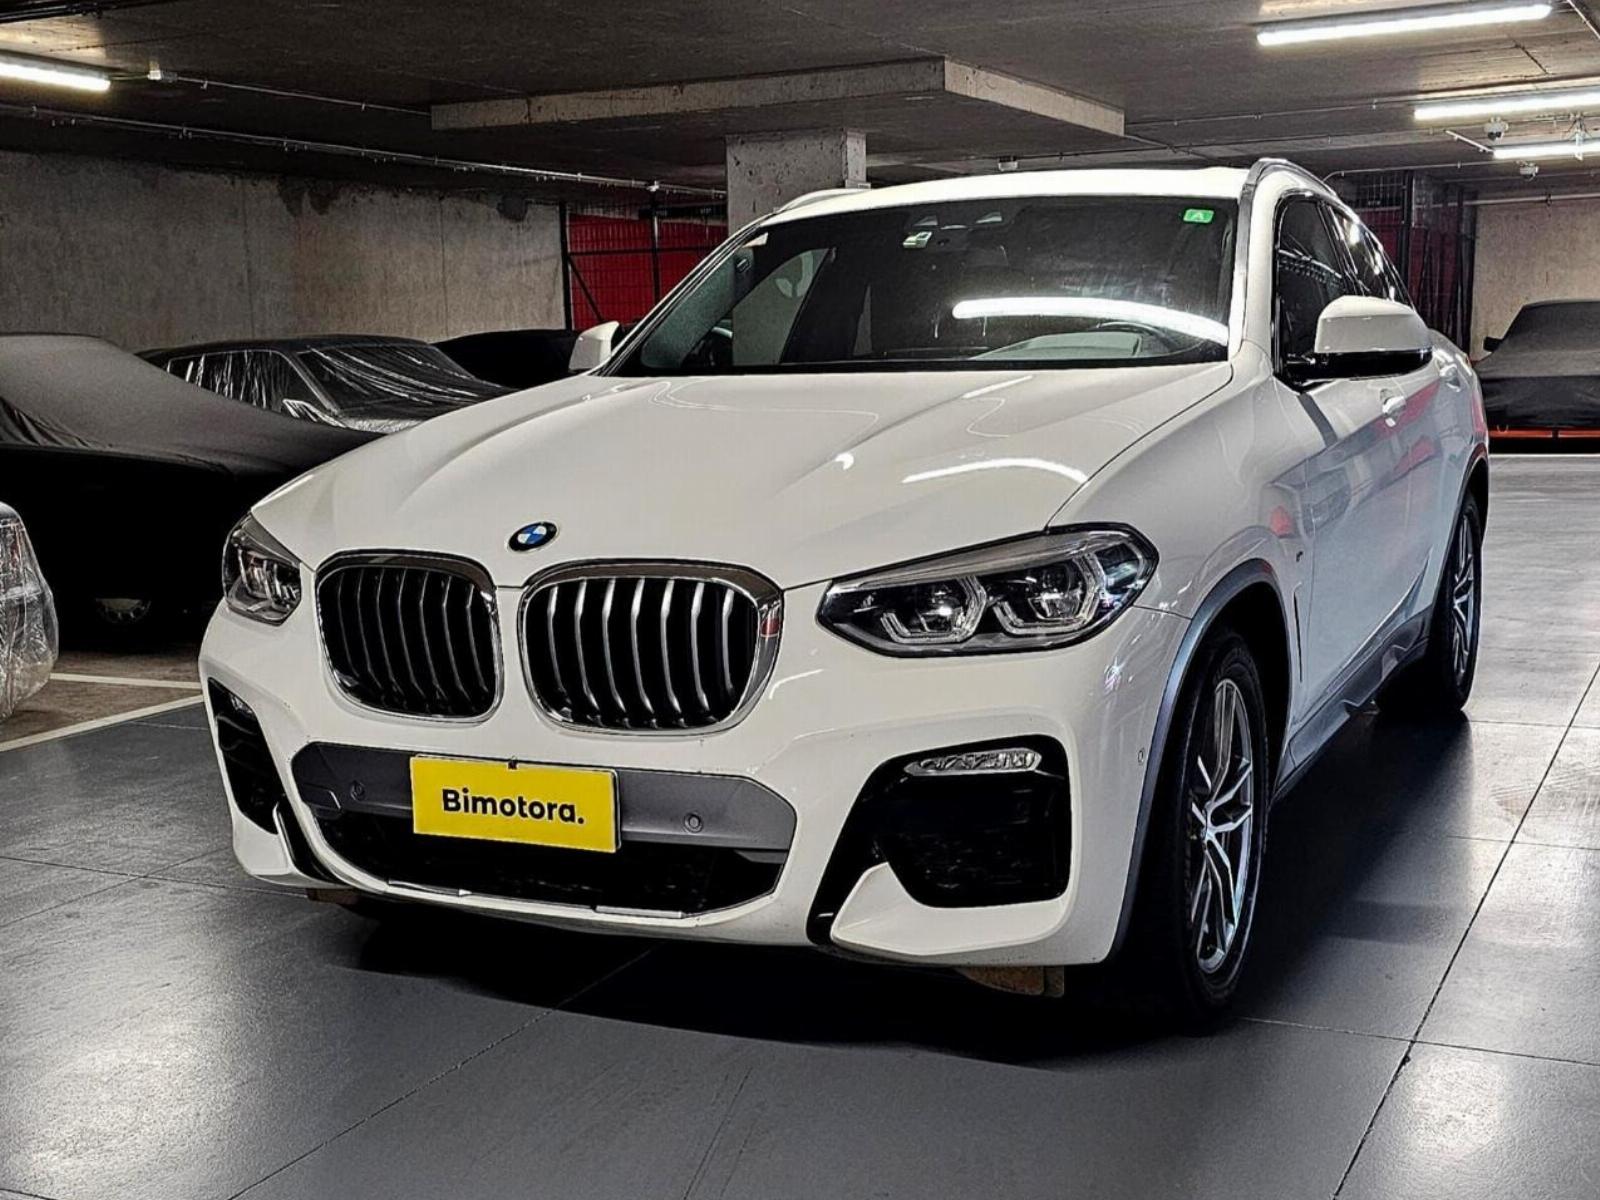 BMW X4 DIESEL 2019 20d xDRIVE - 